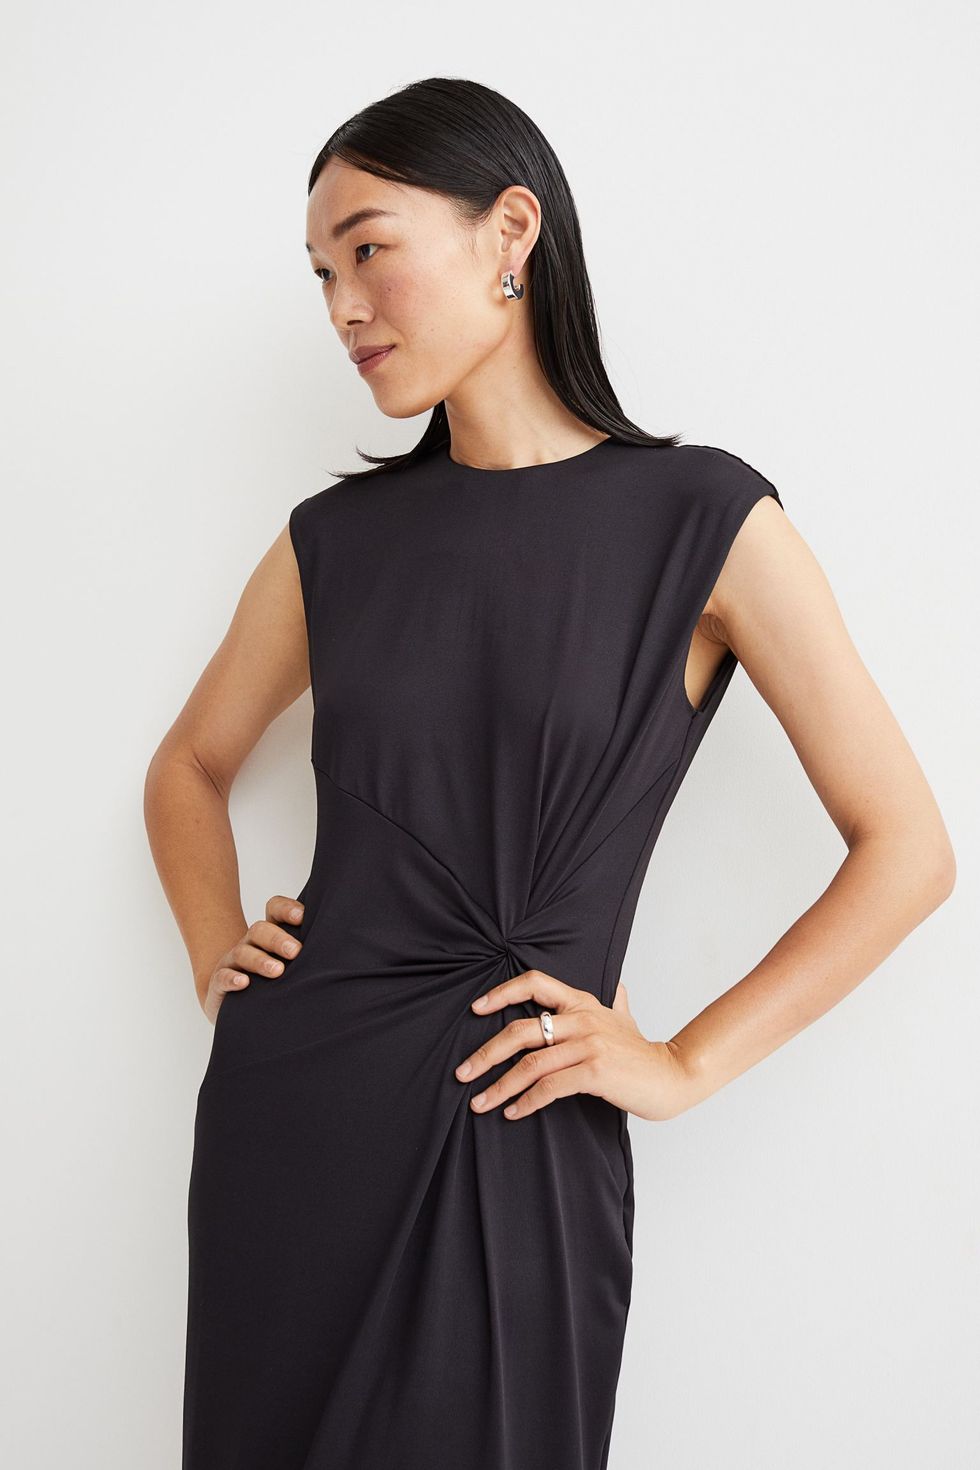 Vestido midi negro de 20 € de H&M lleva incorporado el truco tipazo de las estilistas